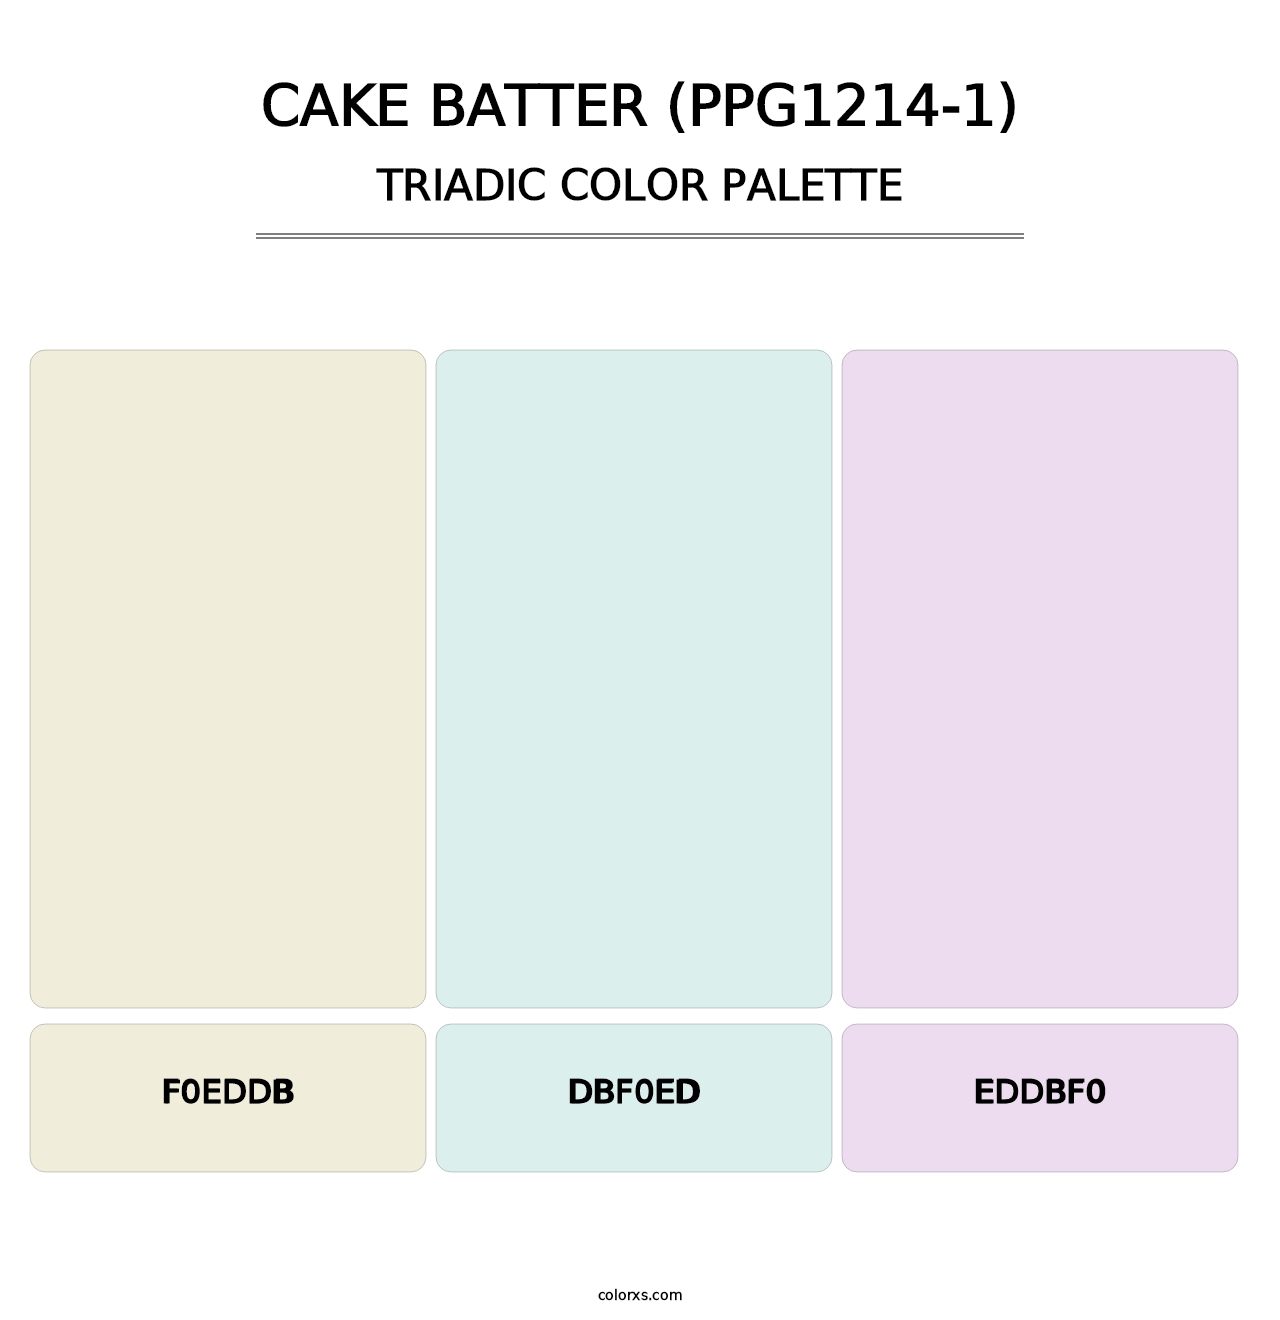 Cake Batter (PPG1214-1) - Triadic Color Palette